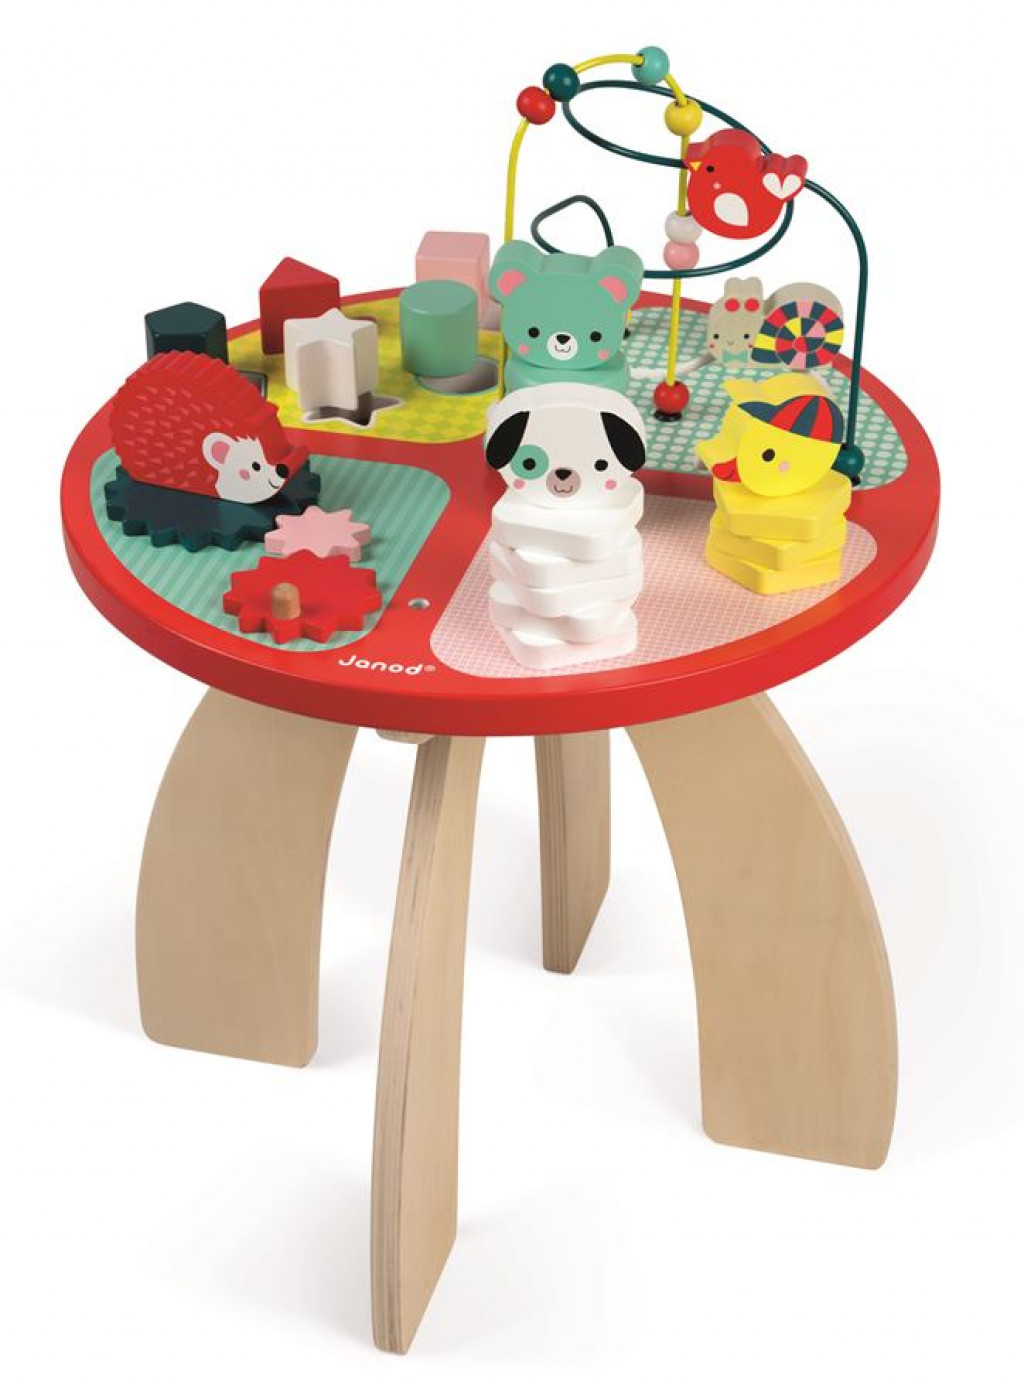 Janod Dřevěný hrací stolek s aktivitami na jemnou motoriku Baby Forest